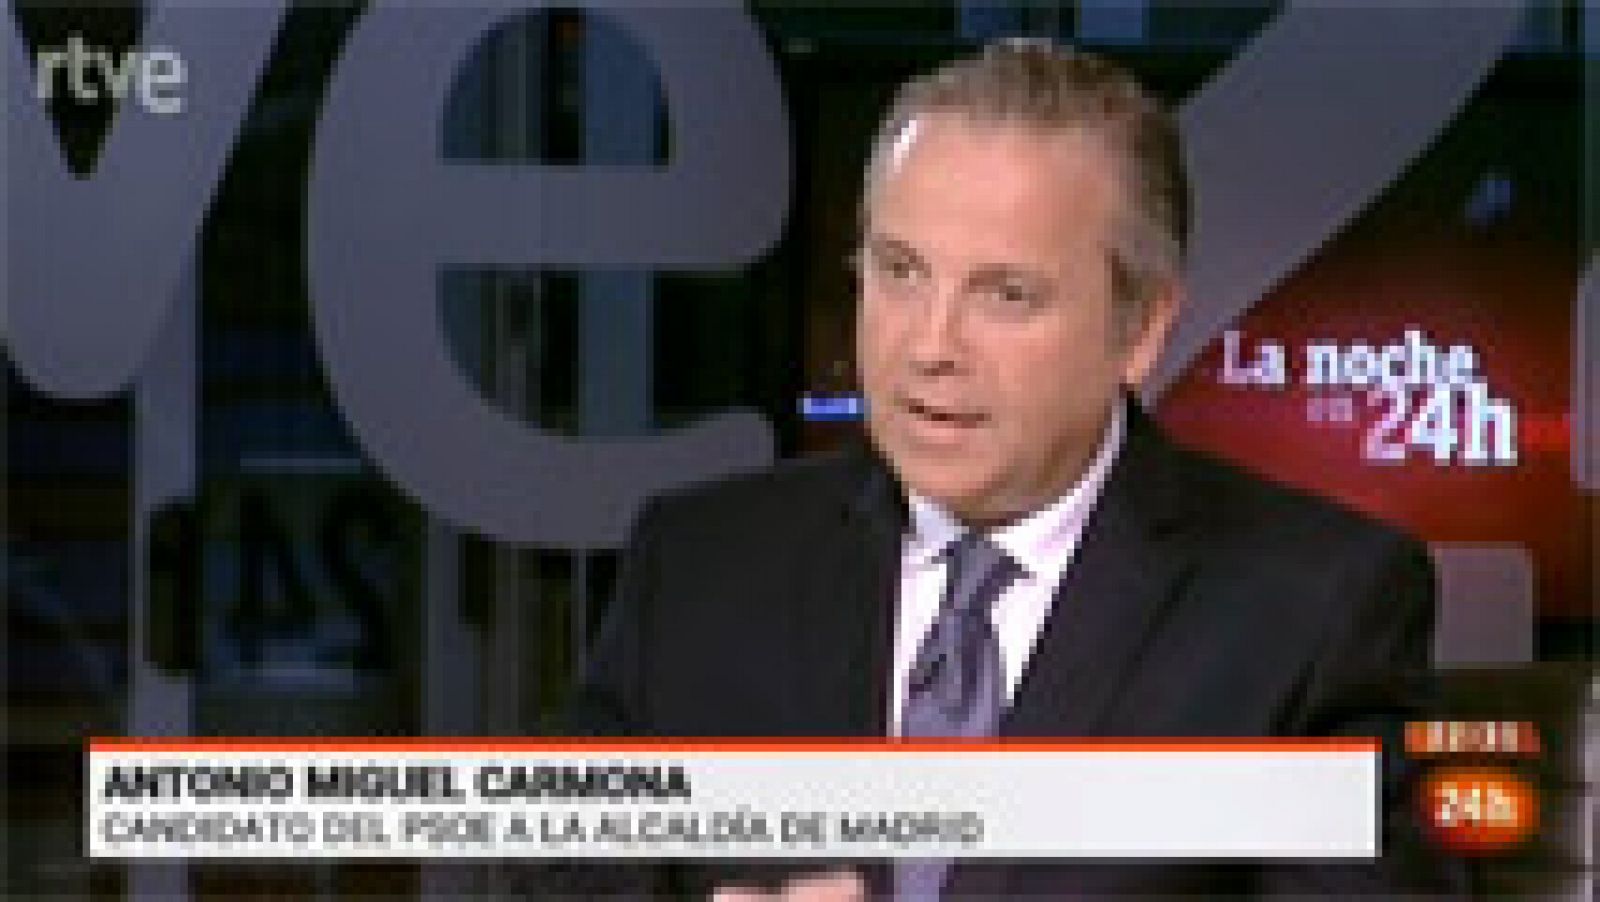 La noche en 24h: Entrevista: Antonio Miguel Carmona (PSOE) en La Noche en 24h | RTVE Play